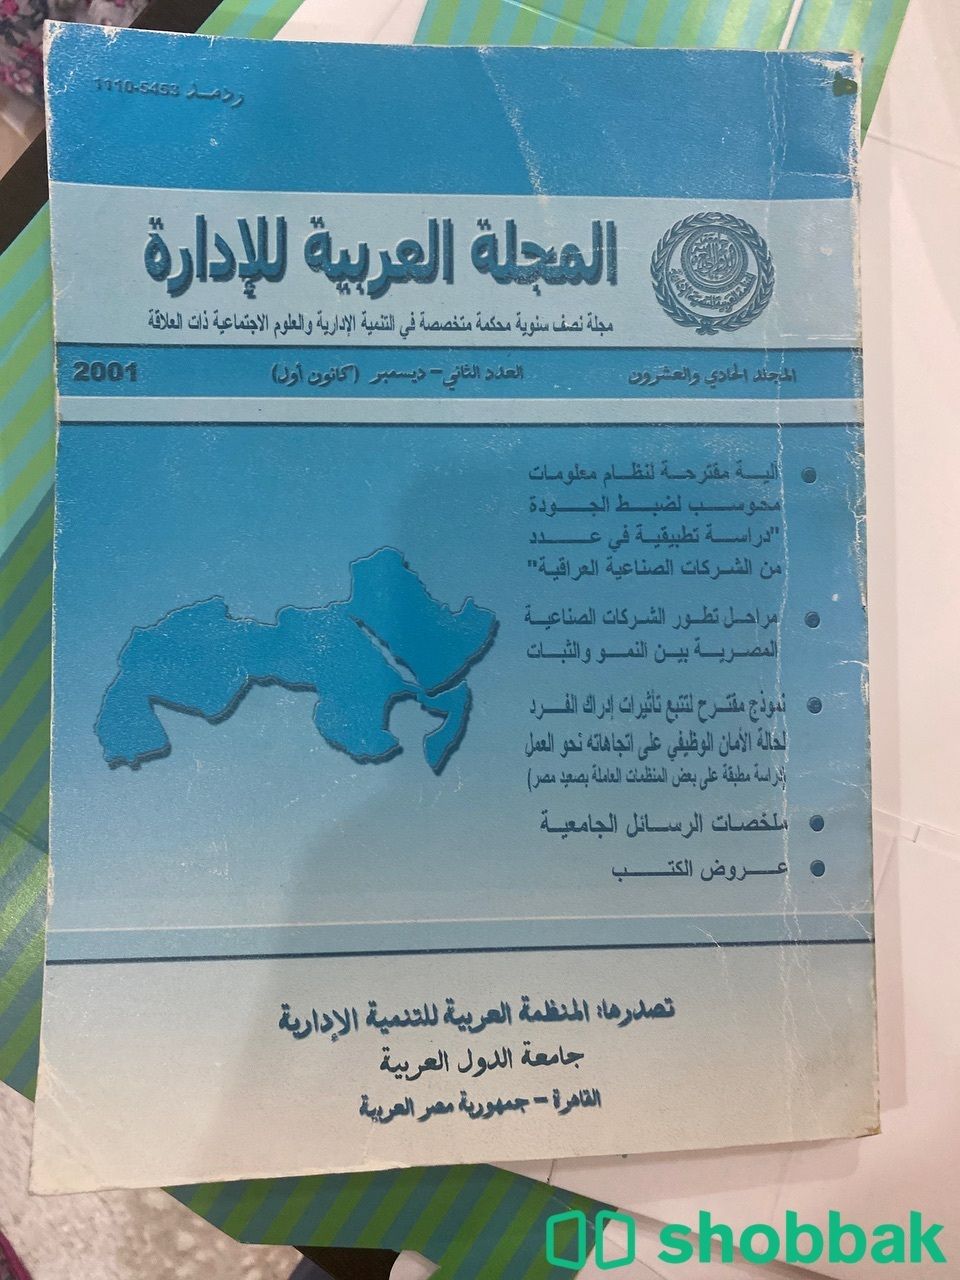 المجلة العربية للإدارة العدد الثاني ٢٠٠١  Shobbak Saudi Arabia